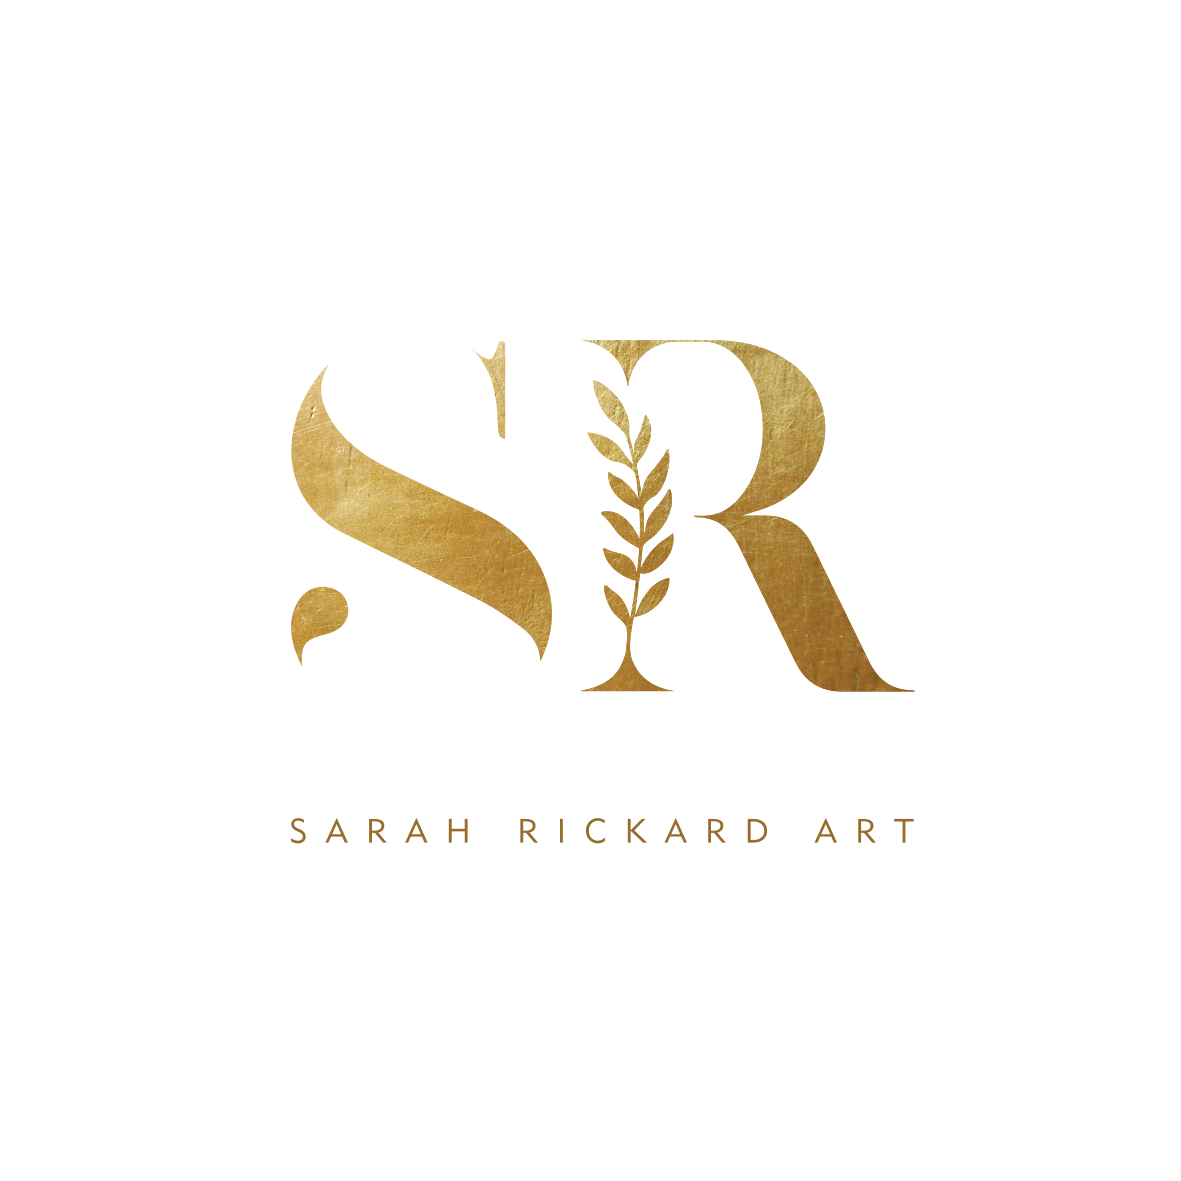 Sarah Rickard Art